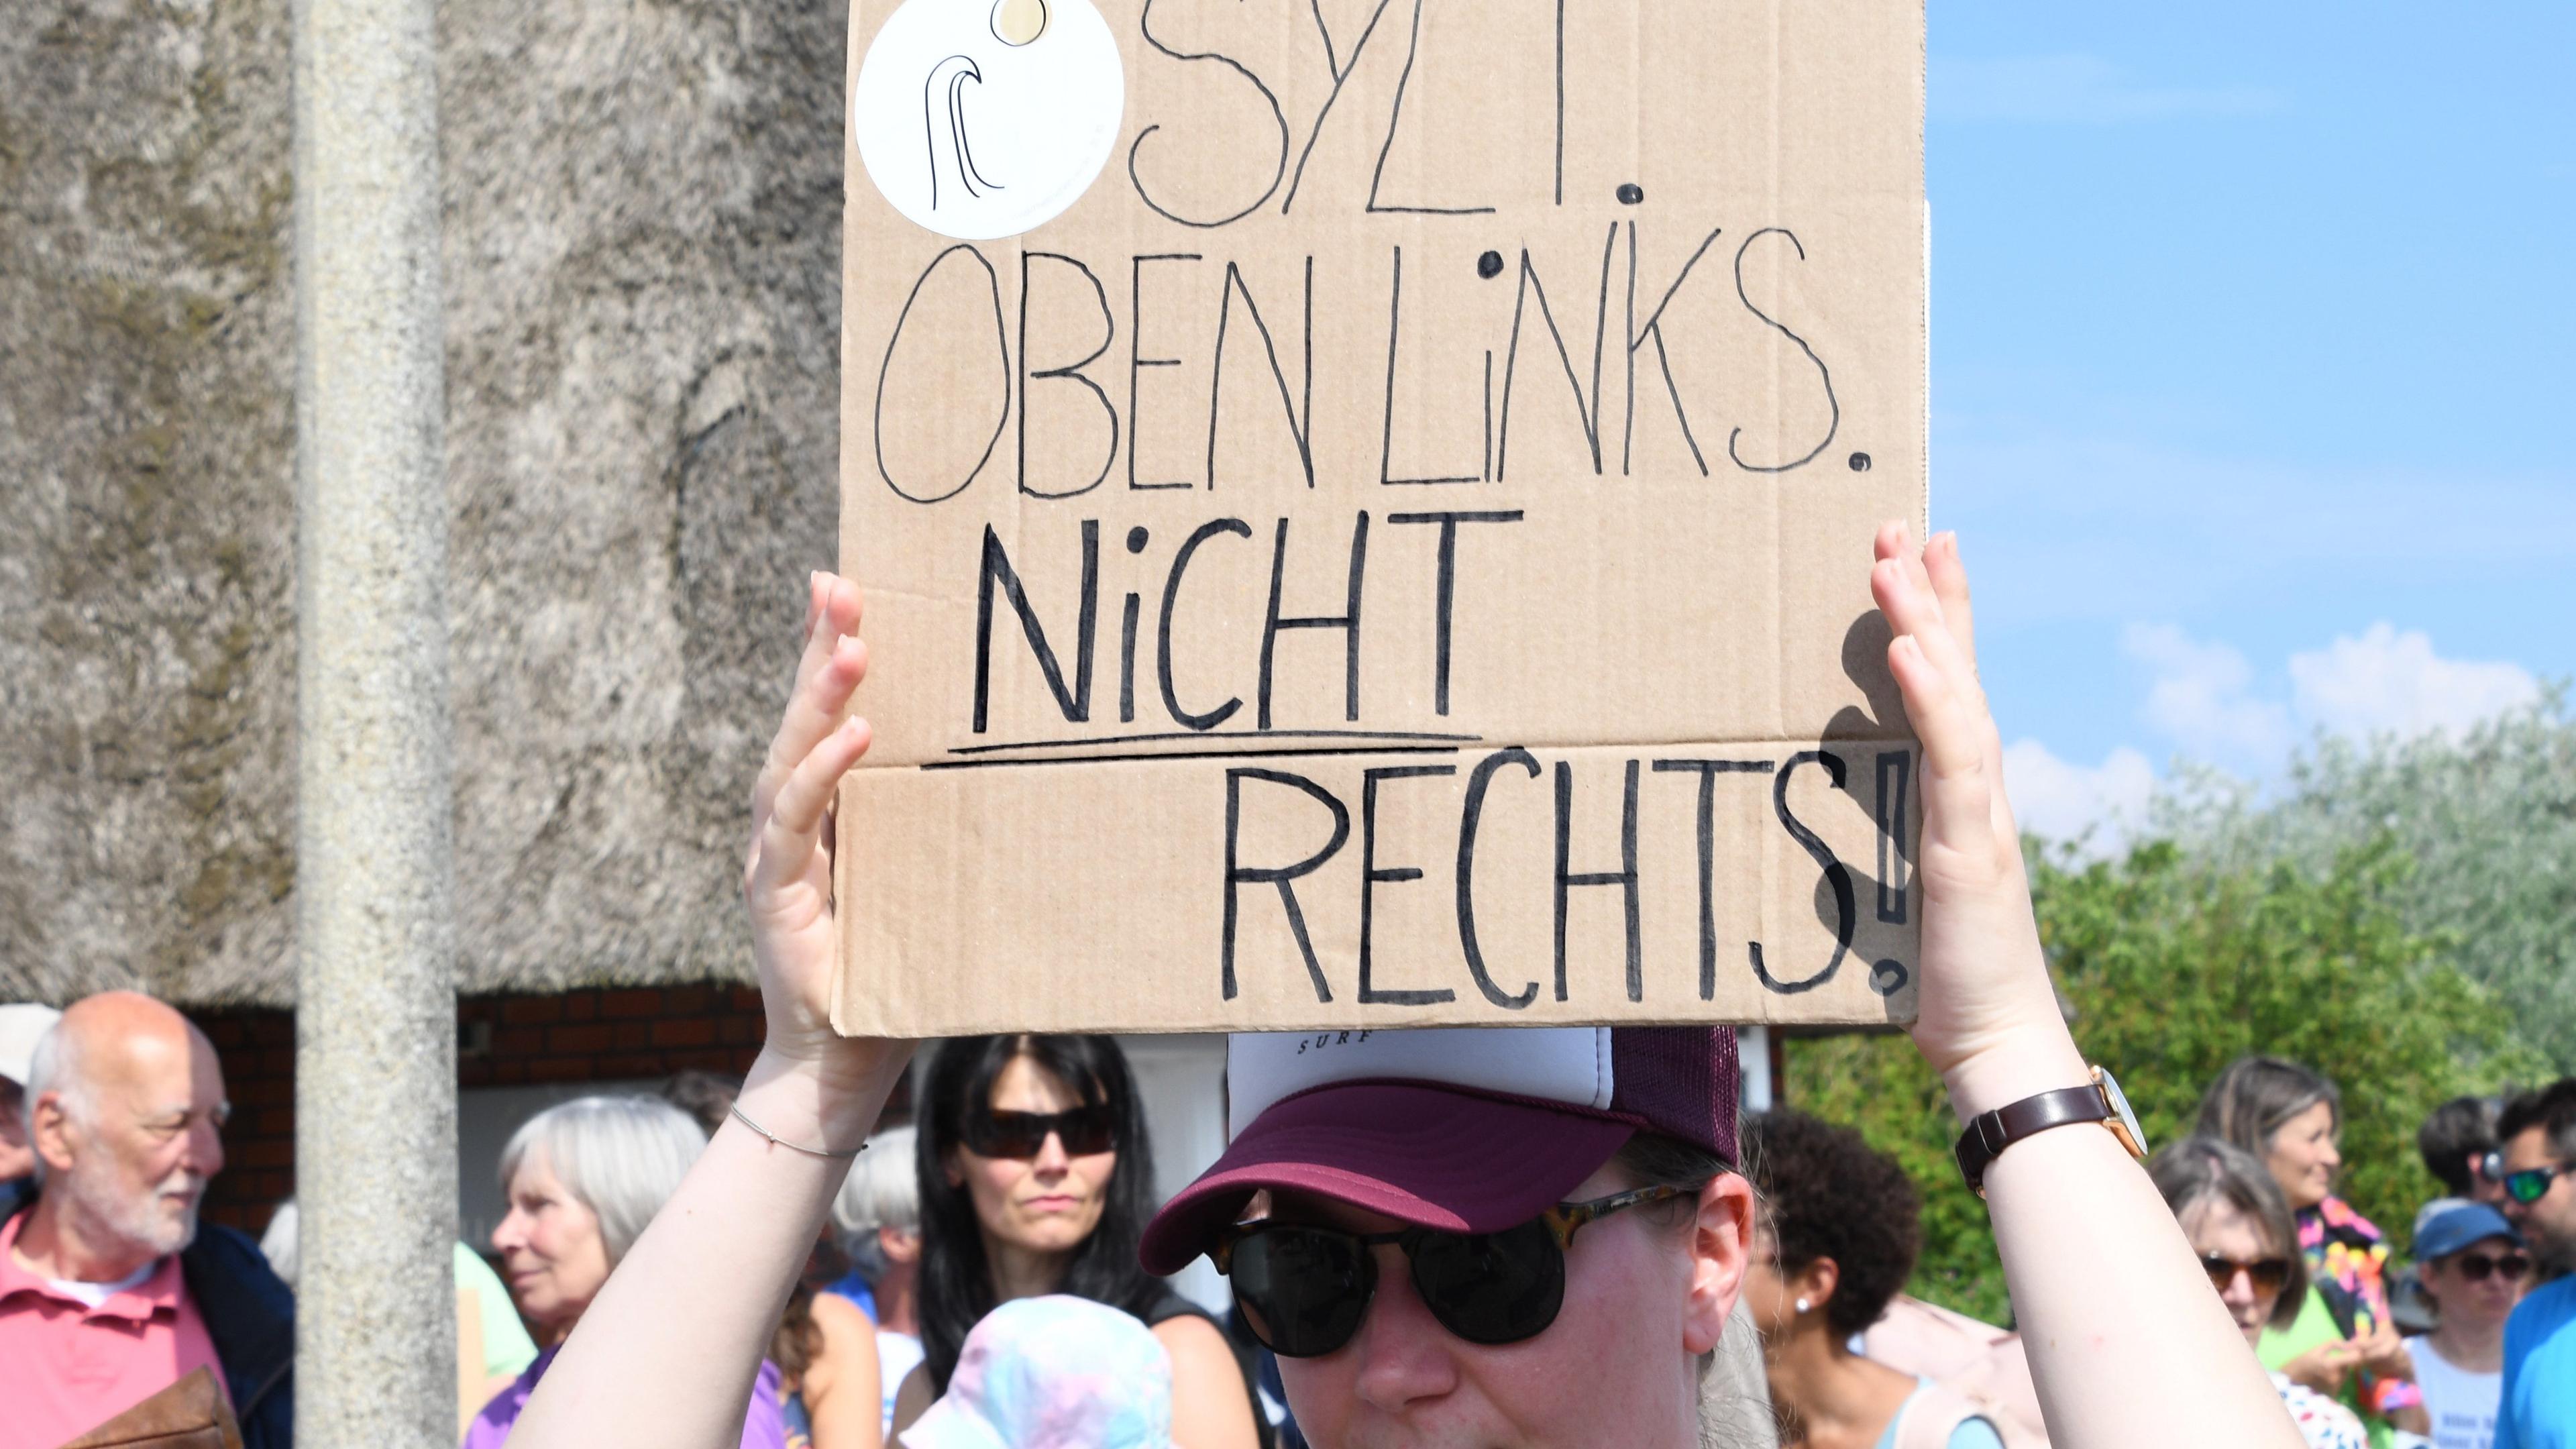 „Sylt oben links nicht rechts“ steht auf einem Plakat, dass eine Frau bei einer Mahnwache am Sonntag auf Sylt in der Hand hält.